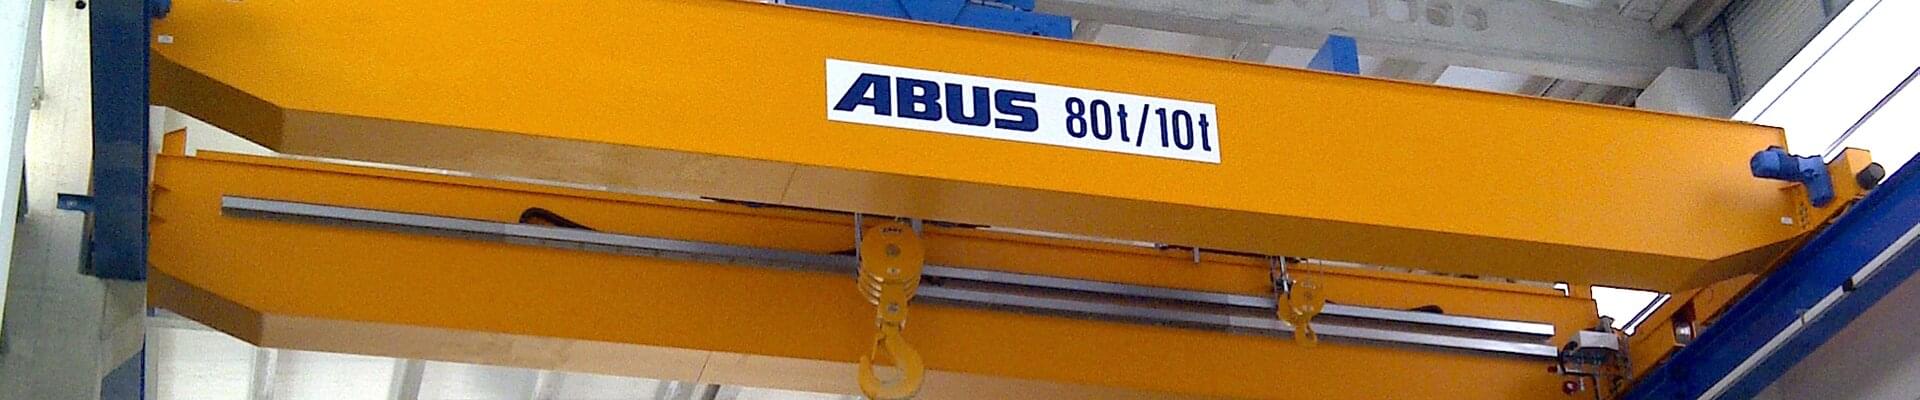 Pont roulant ABUS d'une capacité de 80t/10t dans une entreprise de construction navale au nord-ouest de l'Espagne 